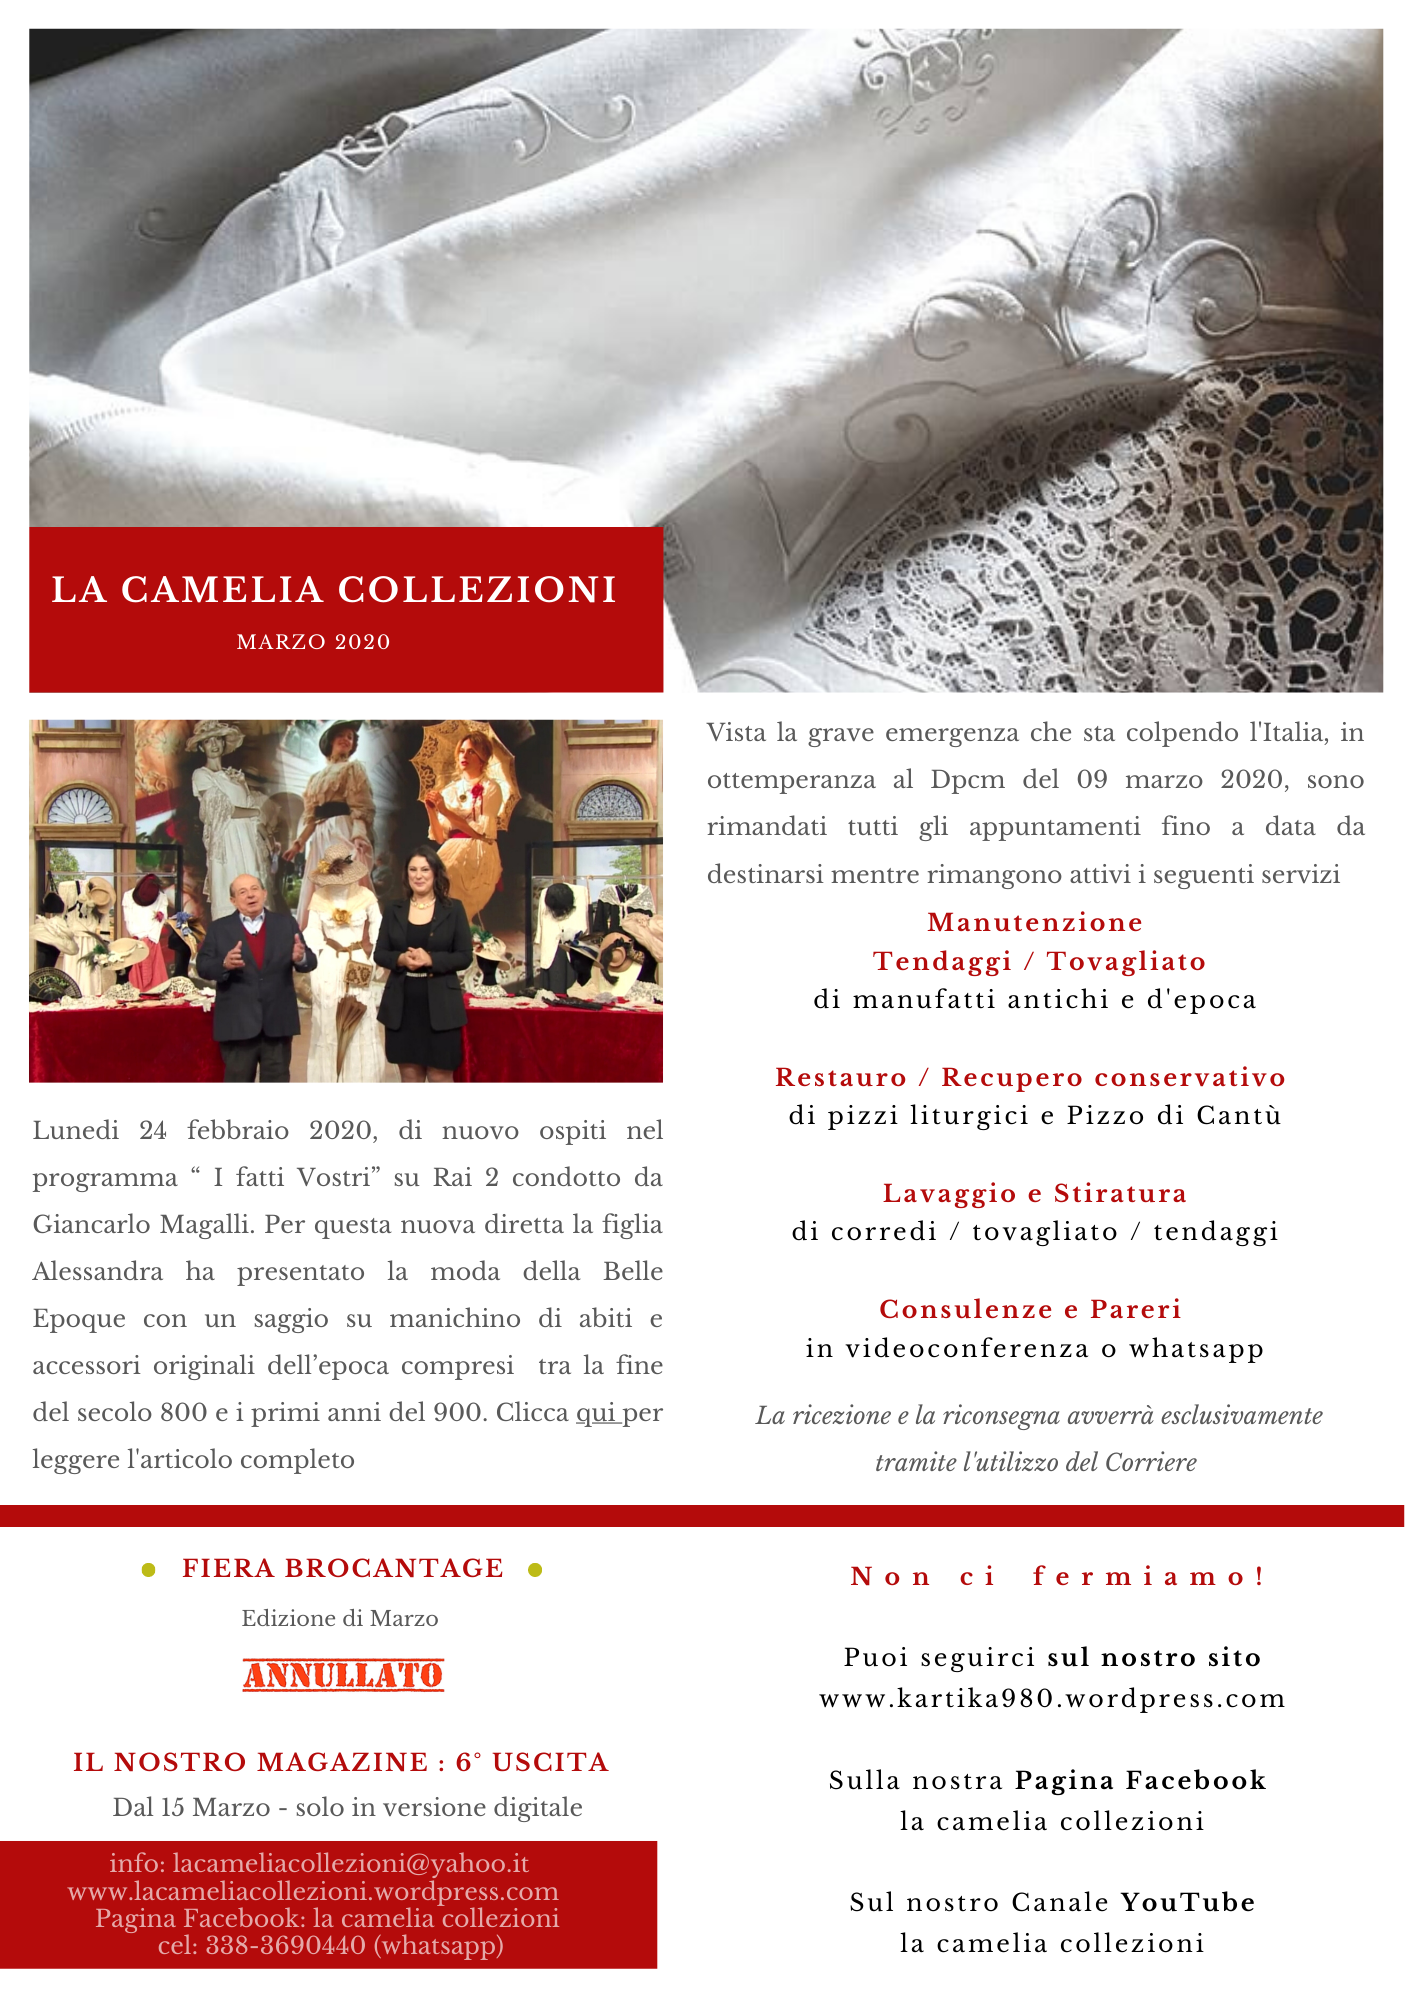 Newsletter Marzo 2020 - la camelia collezioni.png